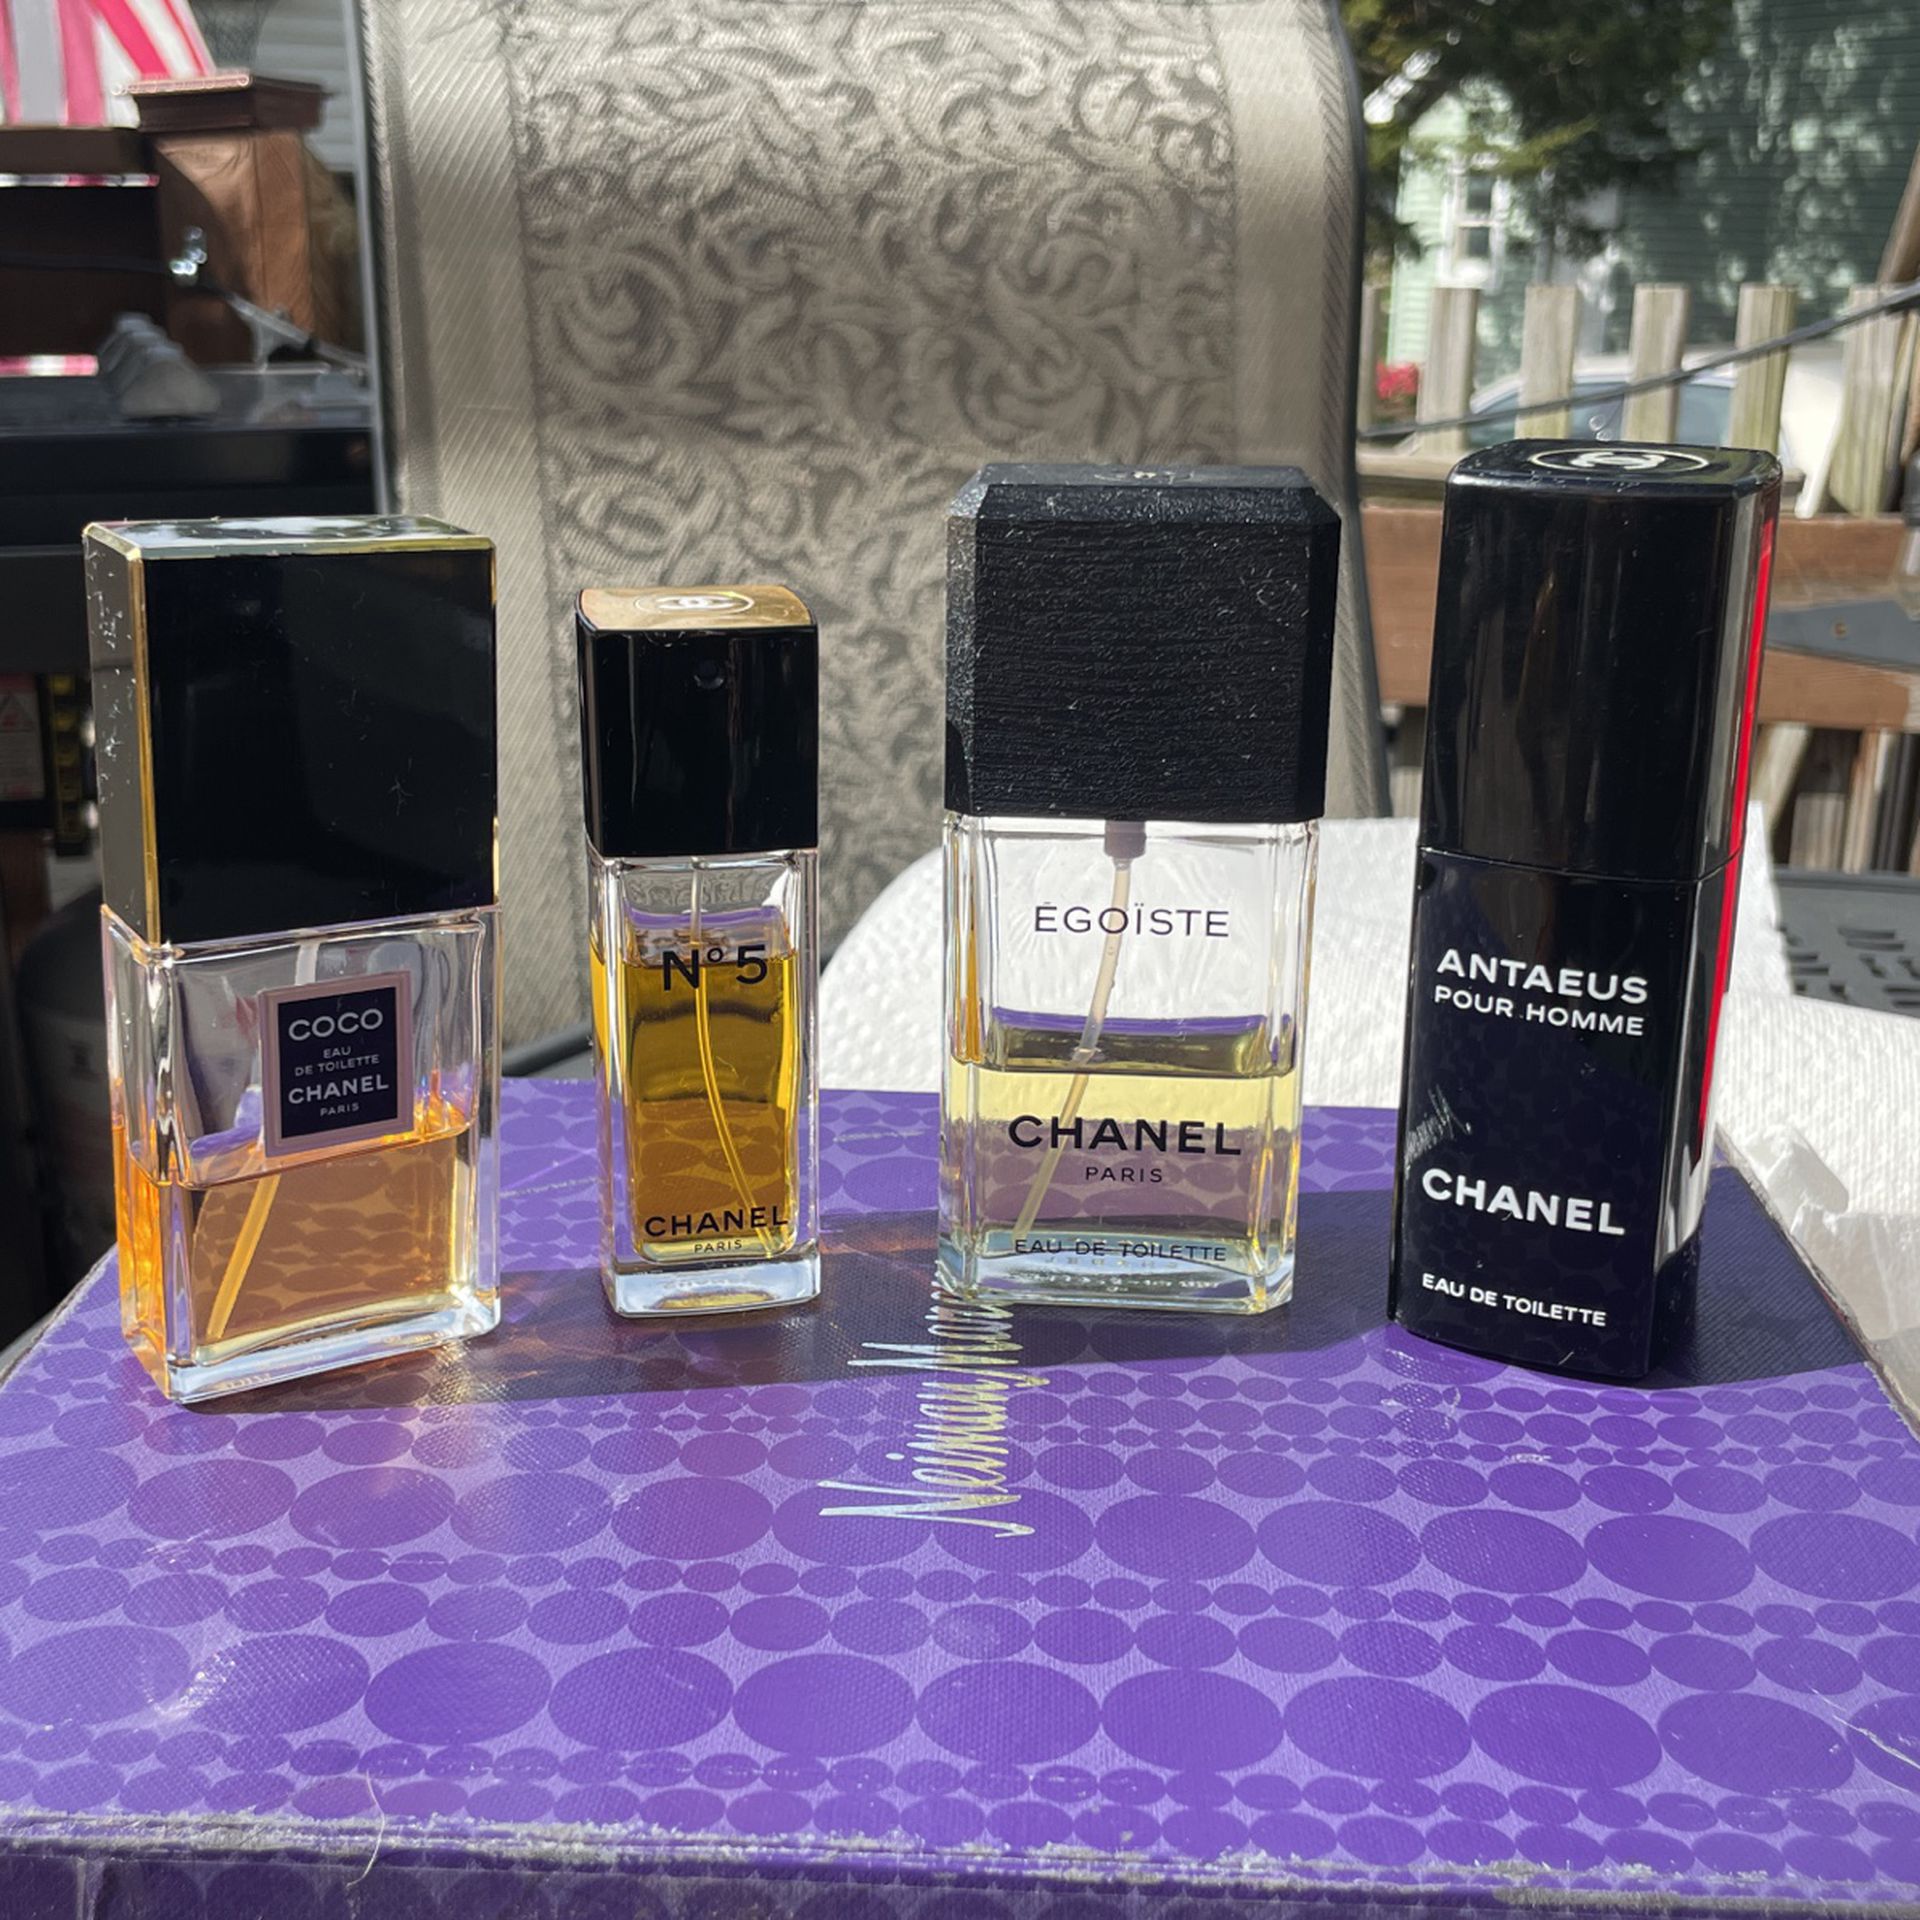 Chanel Paris Eau De Toilette No. 5 , COCO, Egoiste, Antaeus! Perfumes! 